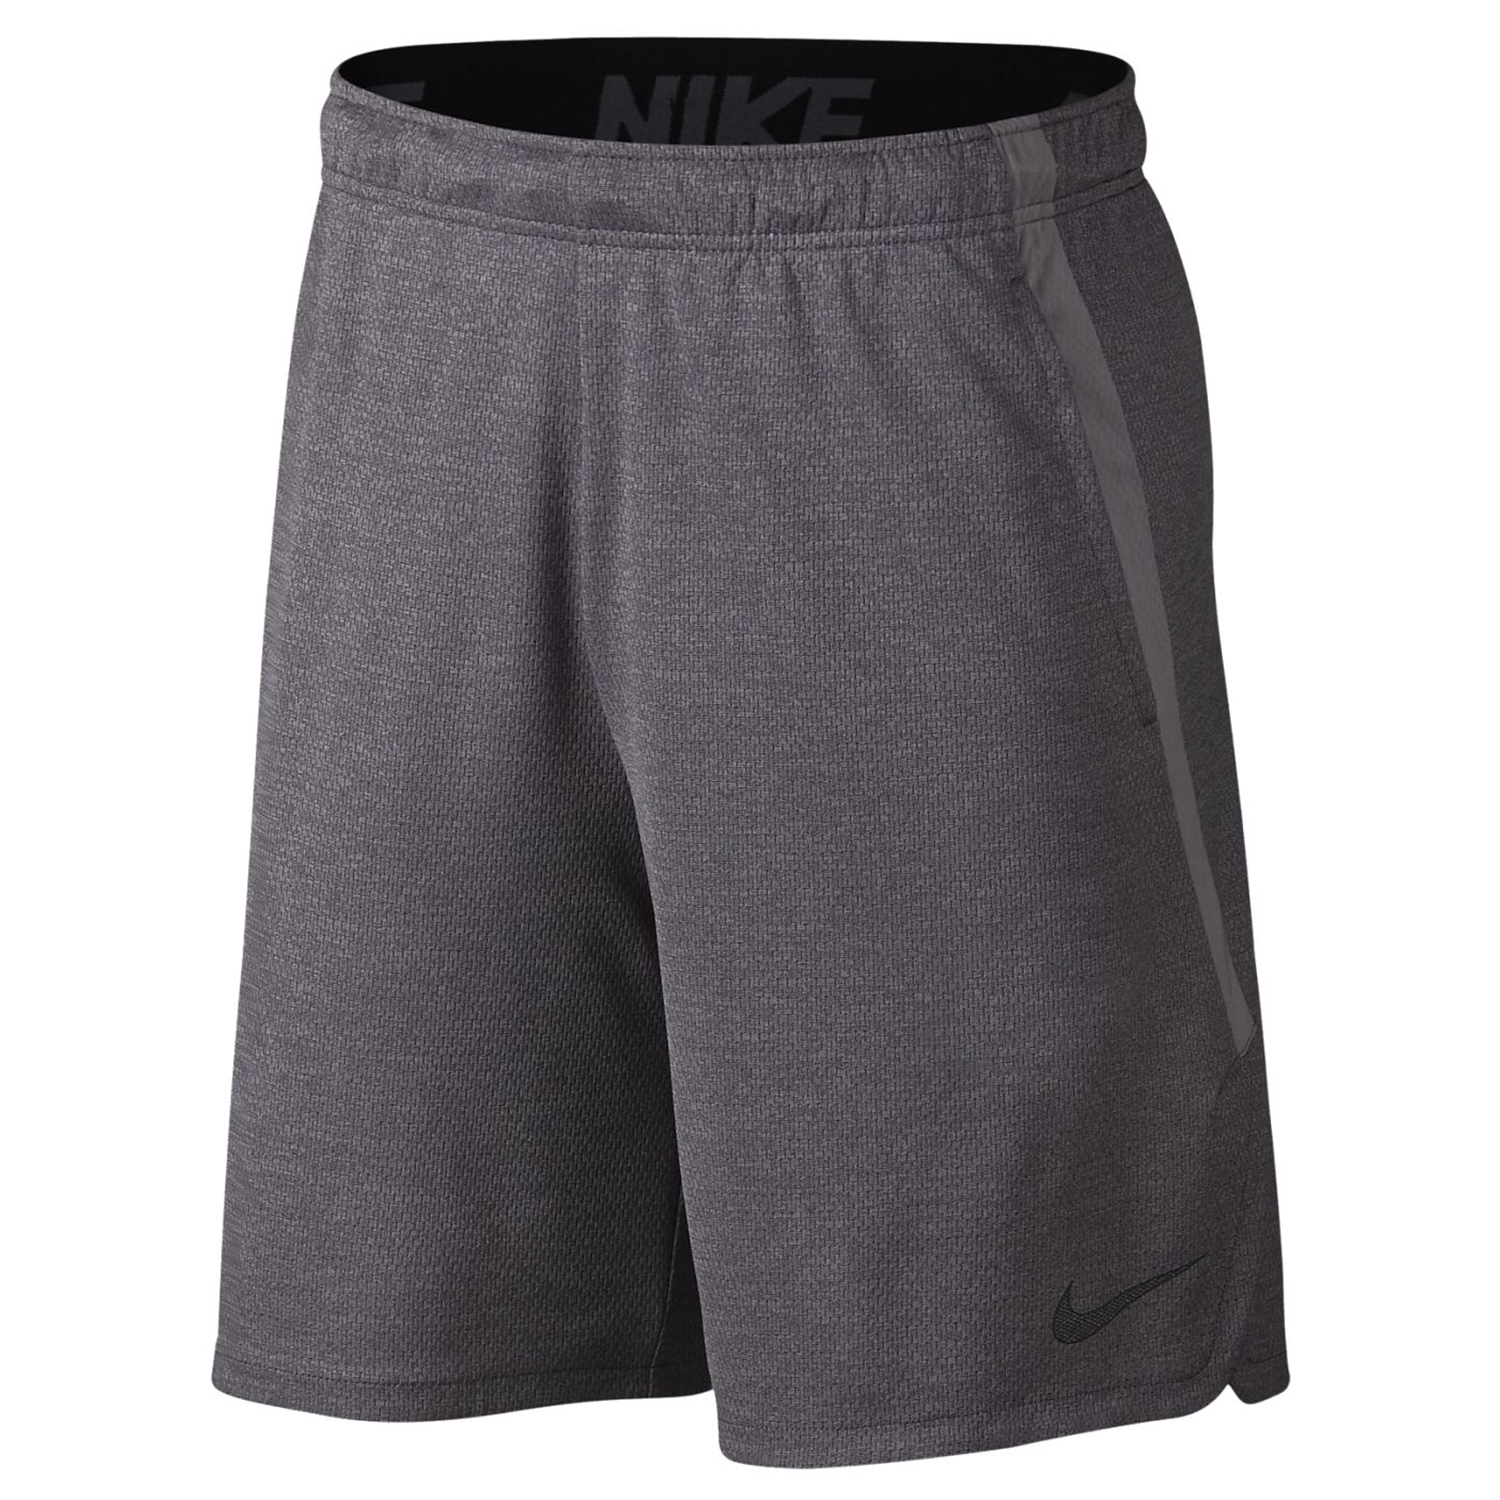 Шорты спортивные Nike Dry Short 4.0 - картинка